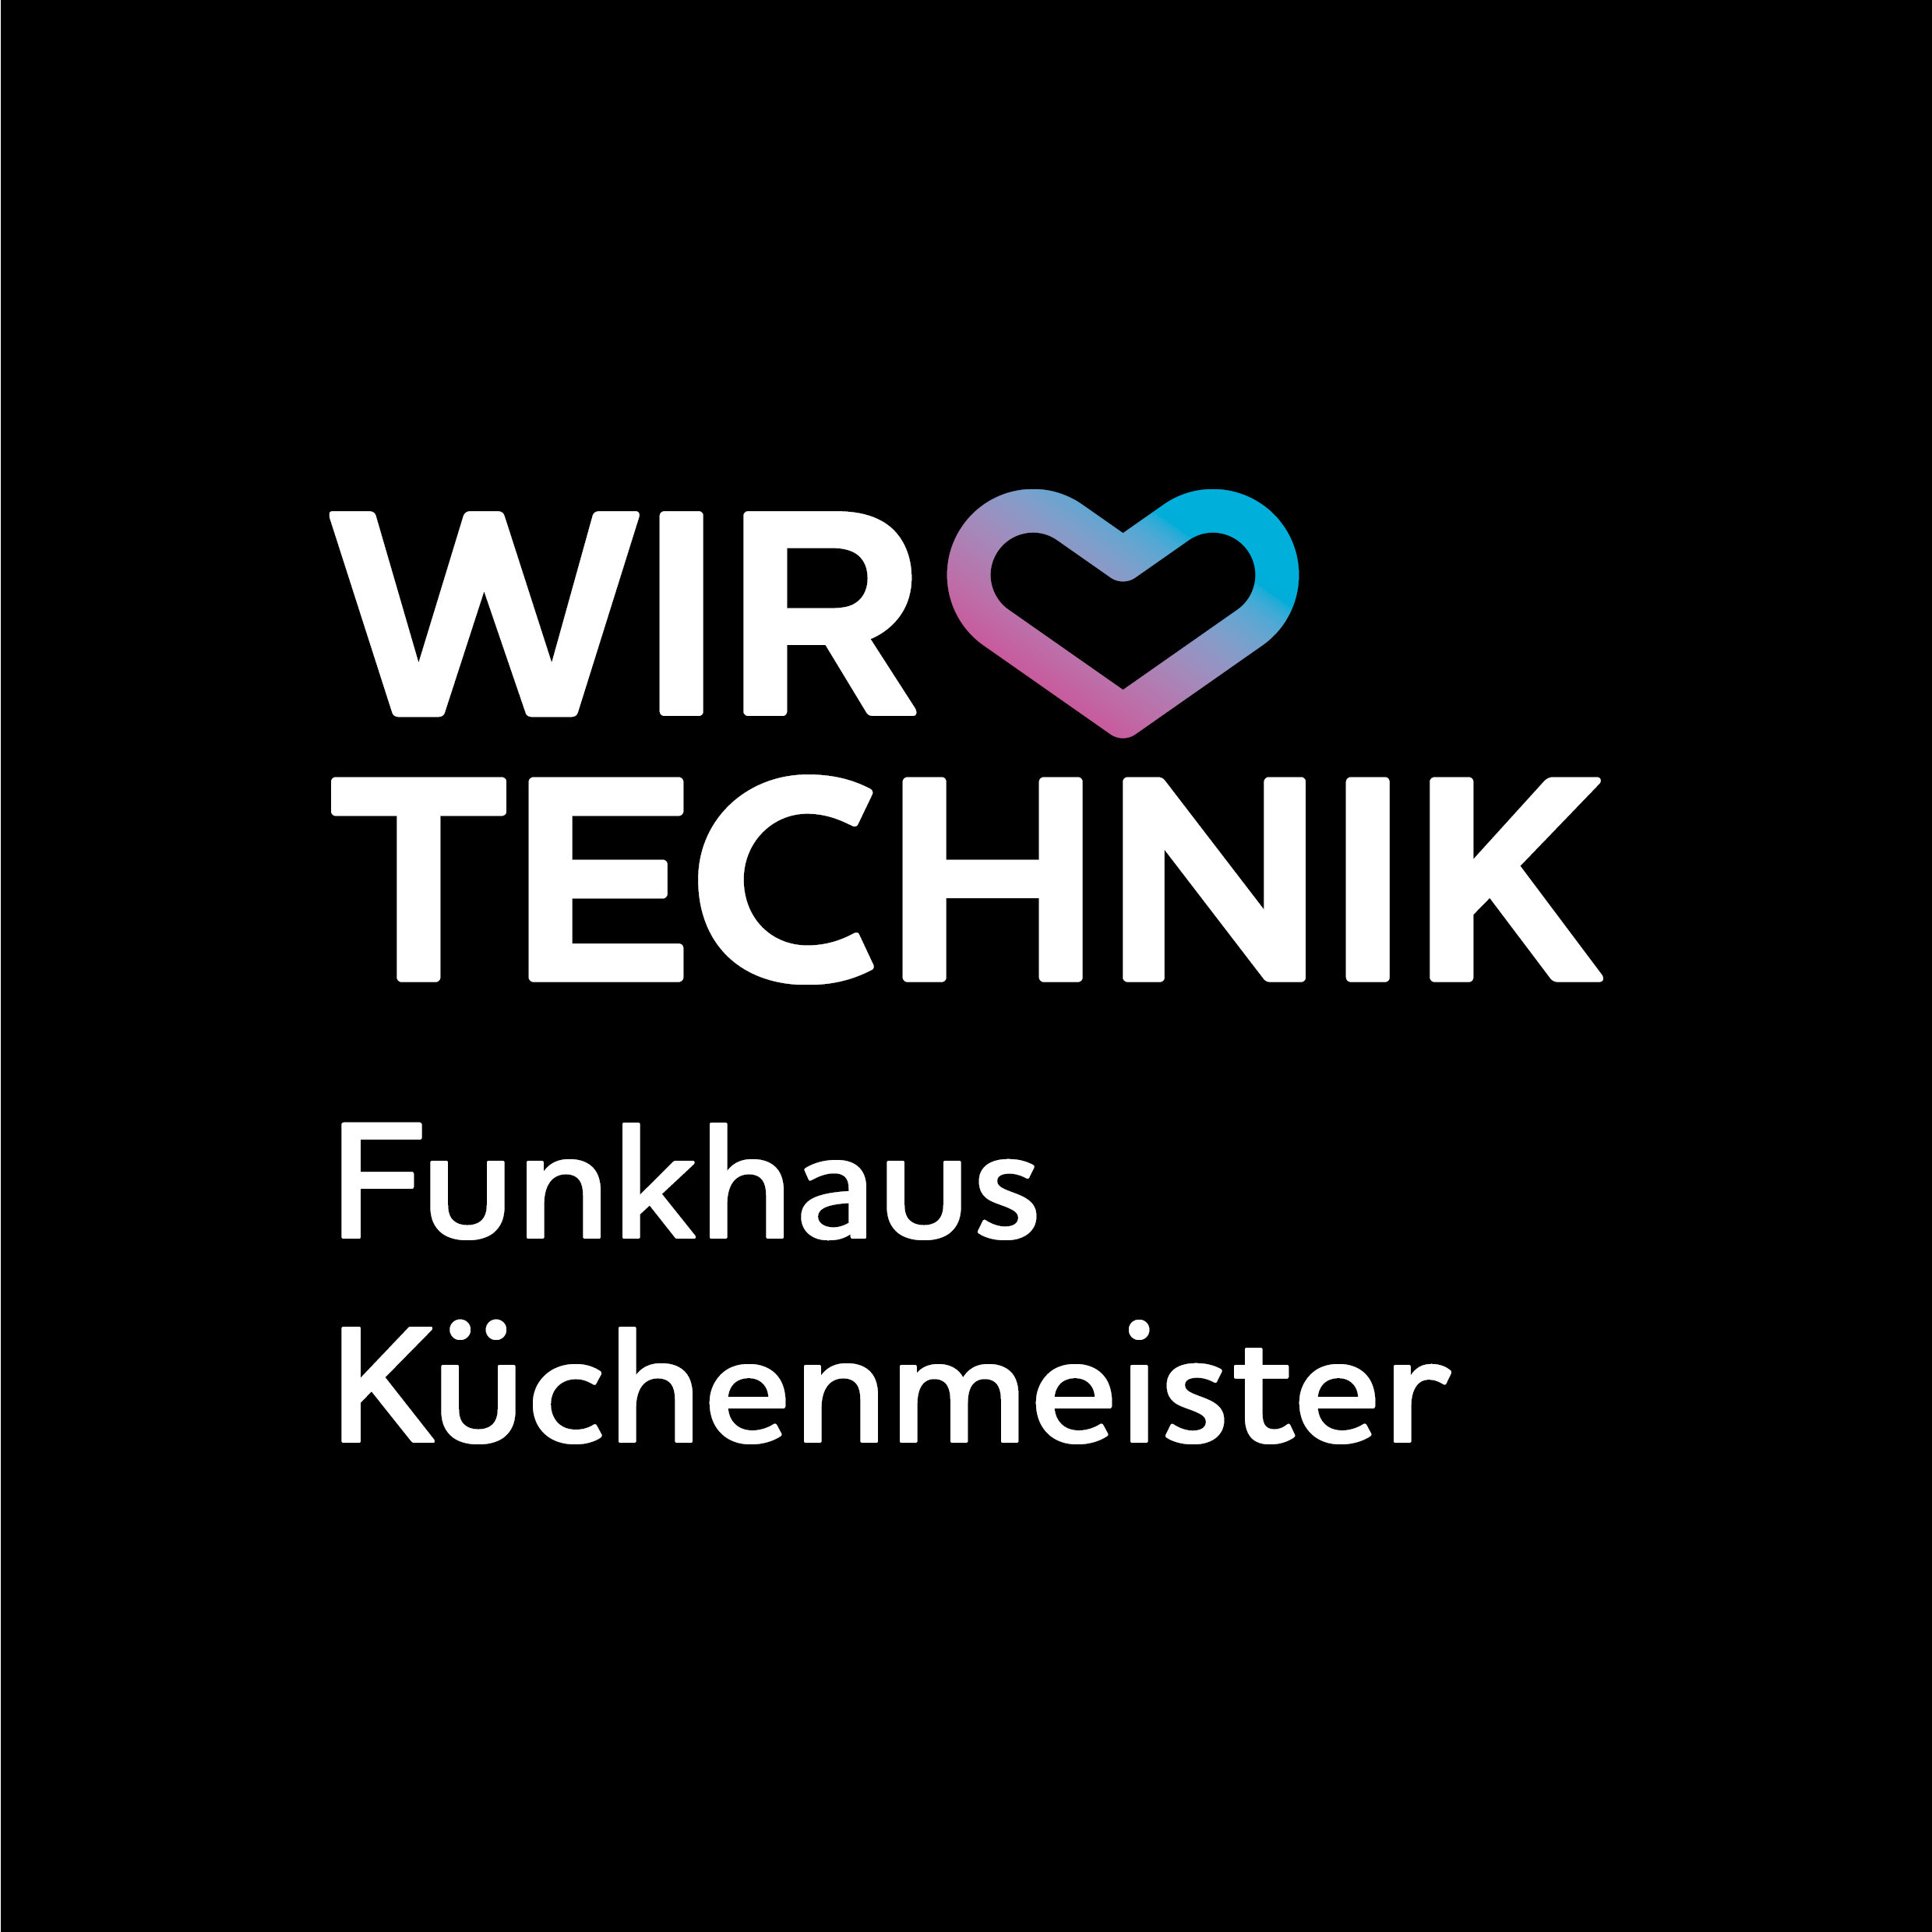 Wir lieben Technik Funkhaus Küchenmeister in Wismar in Mecklenburg - Logo